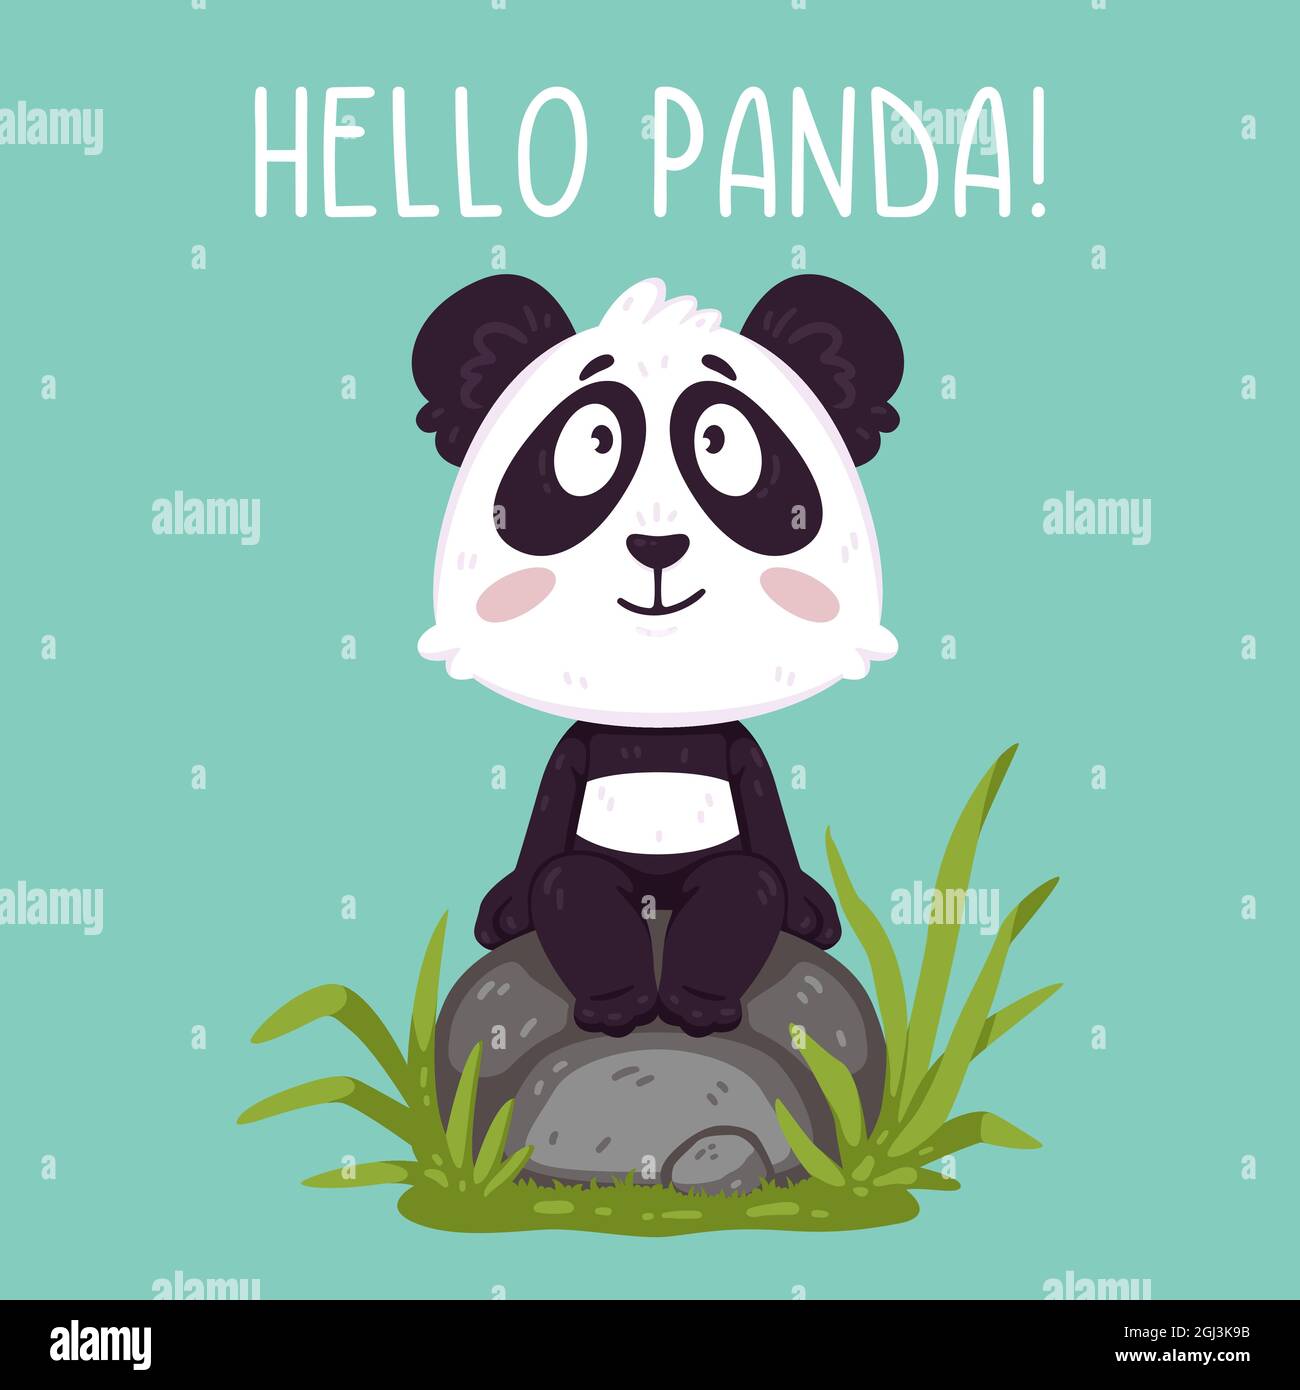 Netter Pandabär, der auf dem Felsen sitzt. Kawaii Tierzoo Vektor. Illustrationsvektor auf pastellfarbenem Hintergrund. Design für Kinderzimmer, Kinder, Grußkarte. Stock Vektor